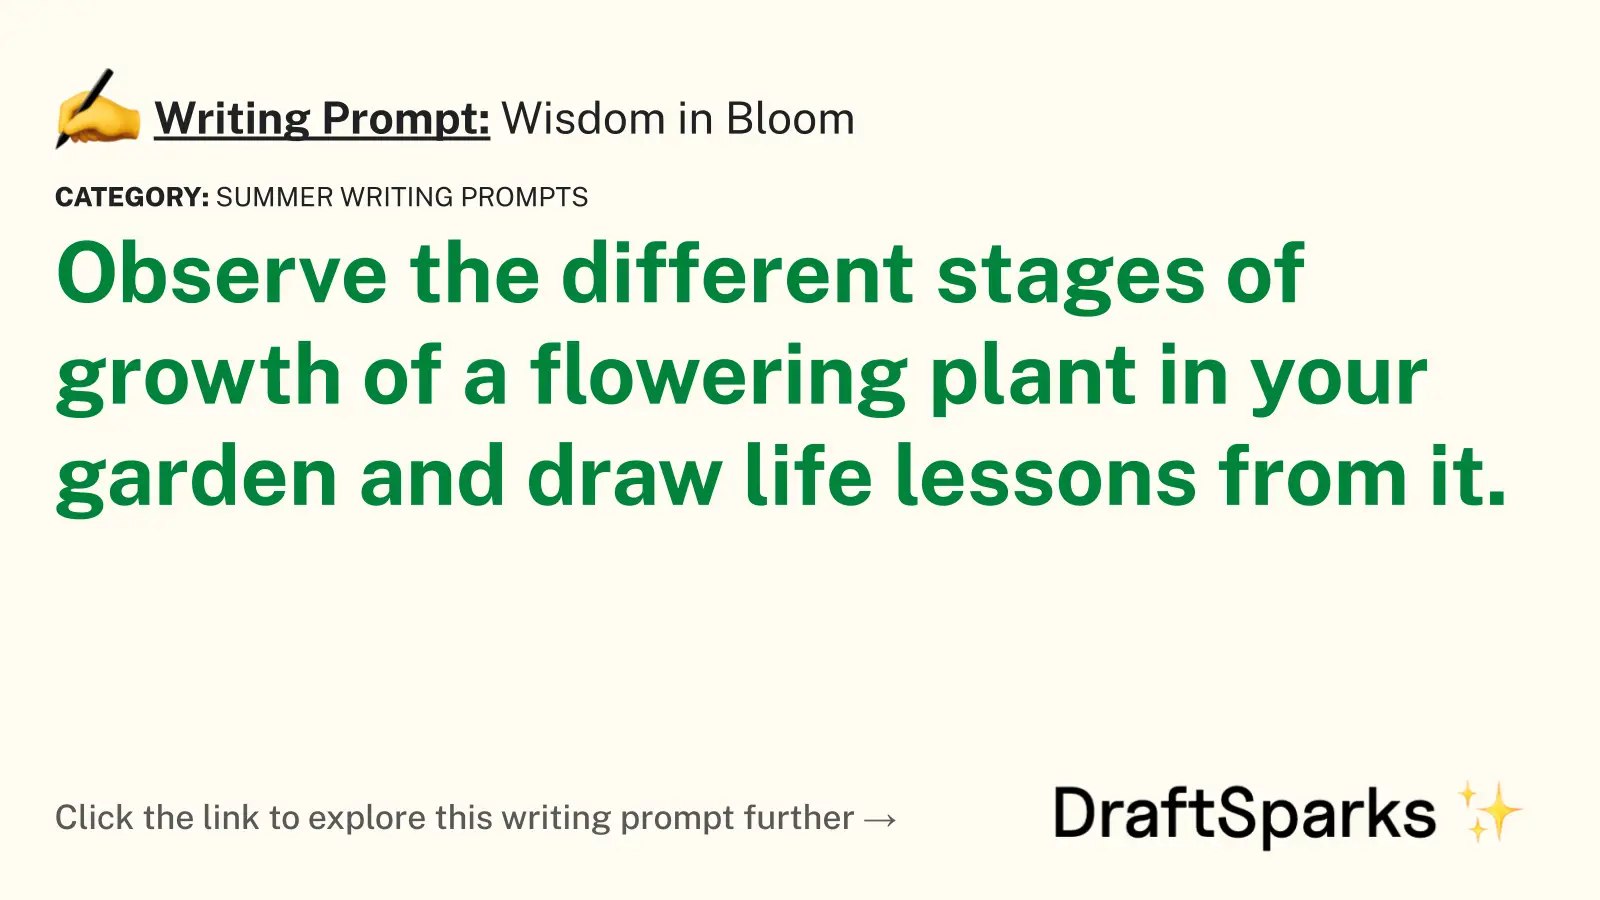 Wisdom in Bloom